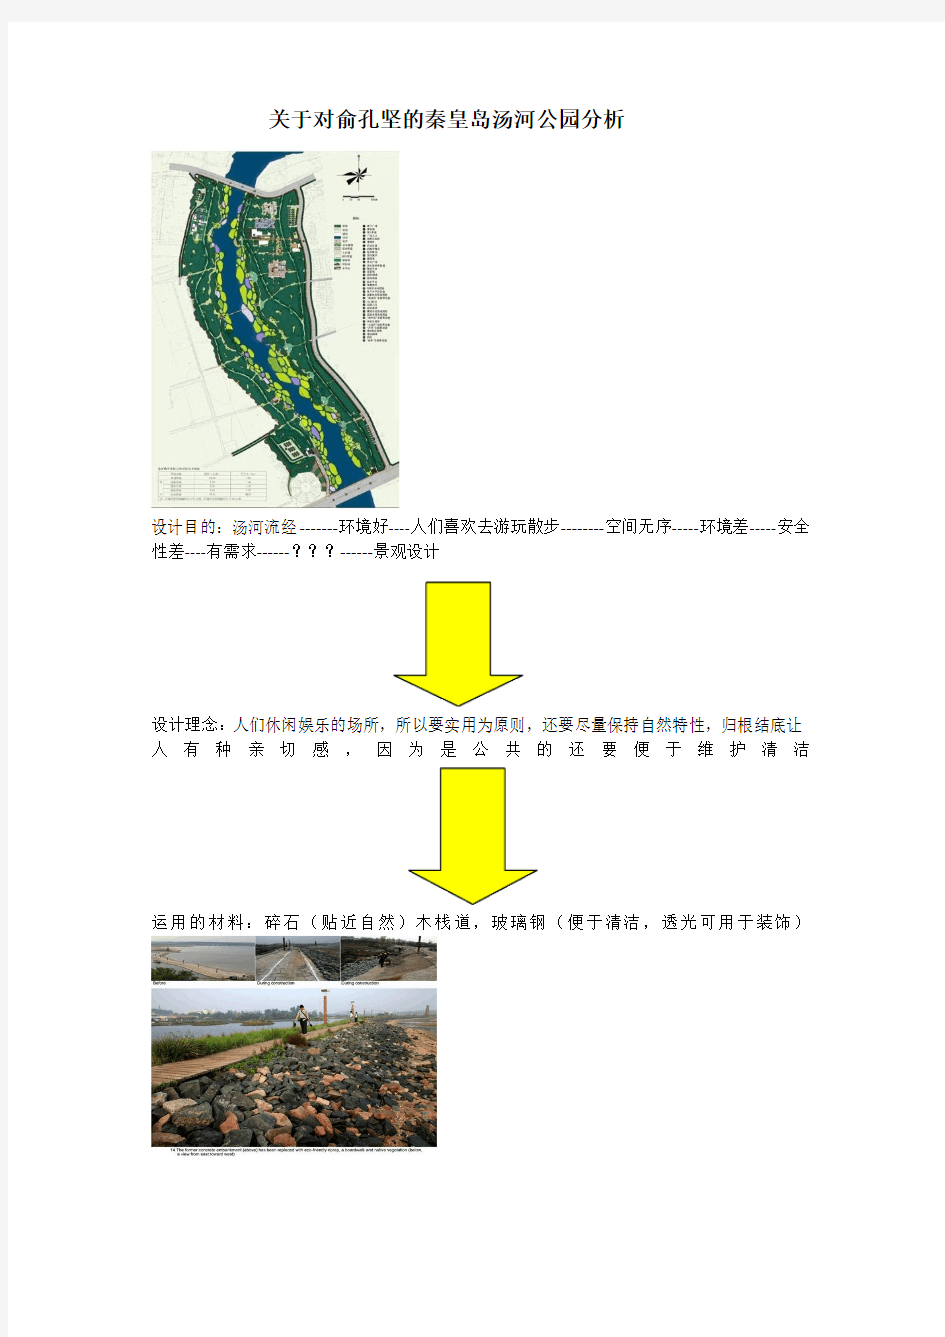 关于对俞孔坚的秦皇岛汤河公园分析